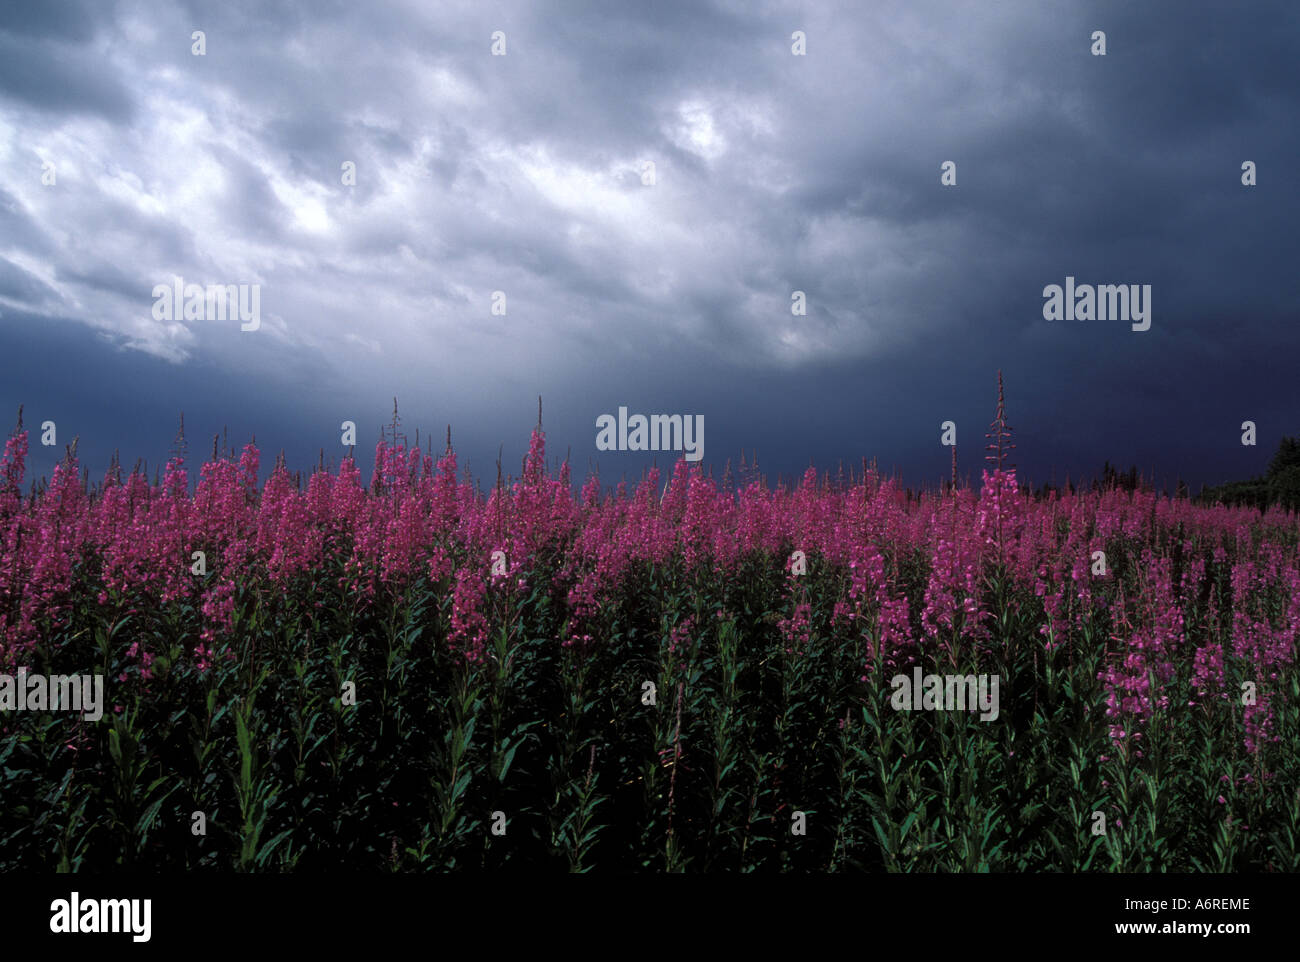 Weidenröschen, die blühenden Wiese mit dunklen Regenwolken senken Kenai-Halbinsel Alaska Stockfoto